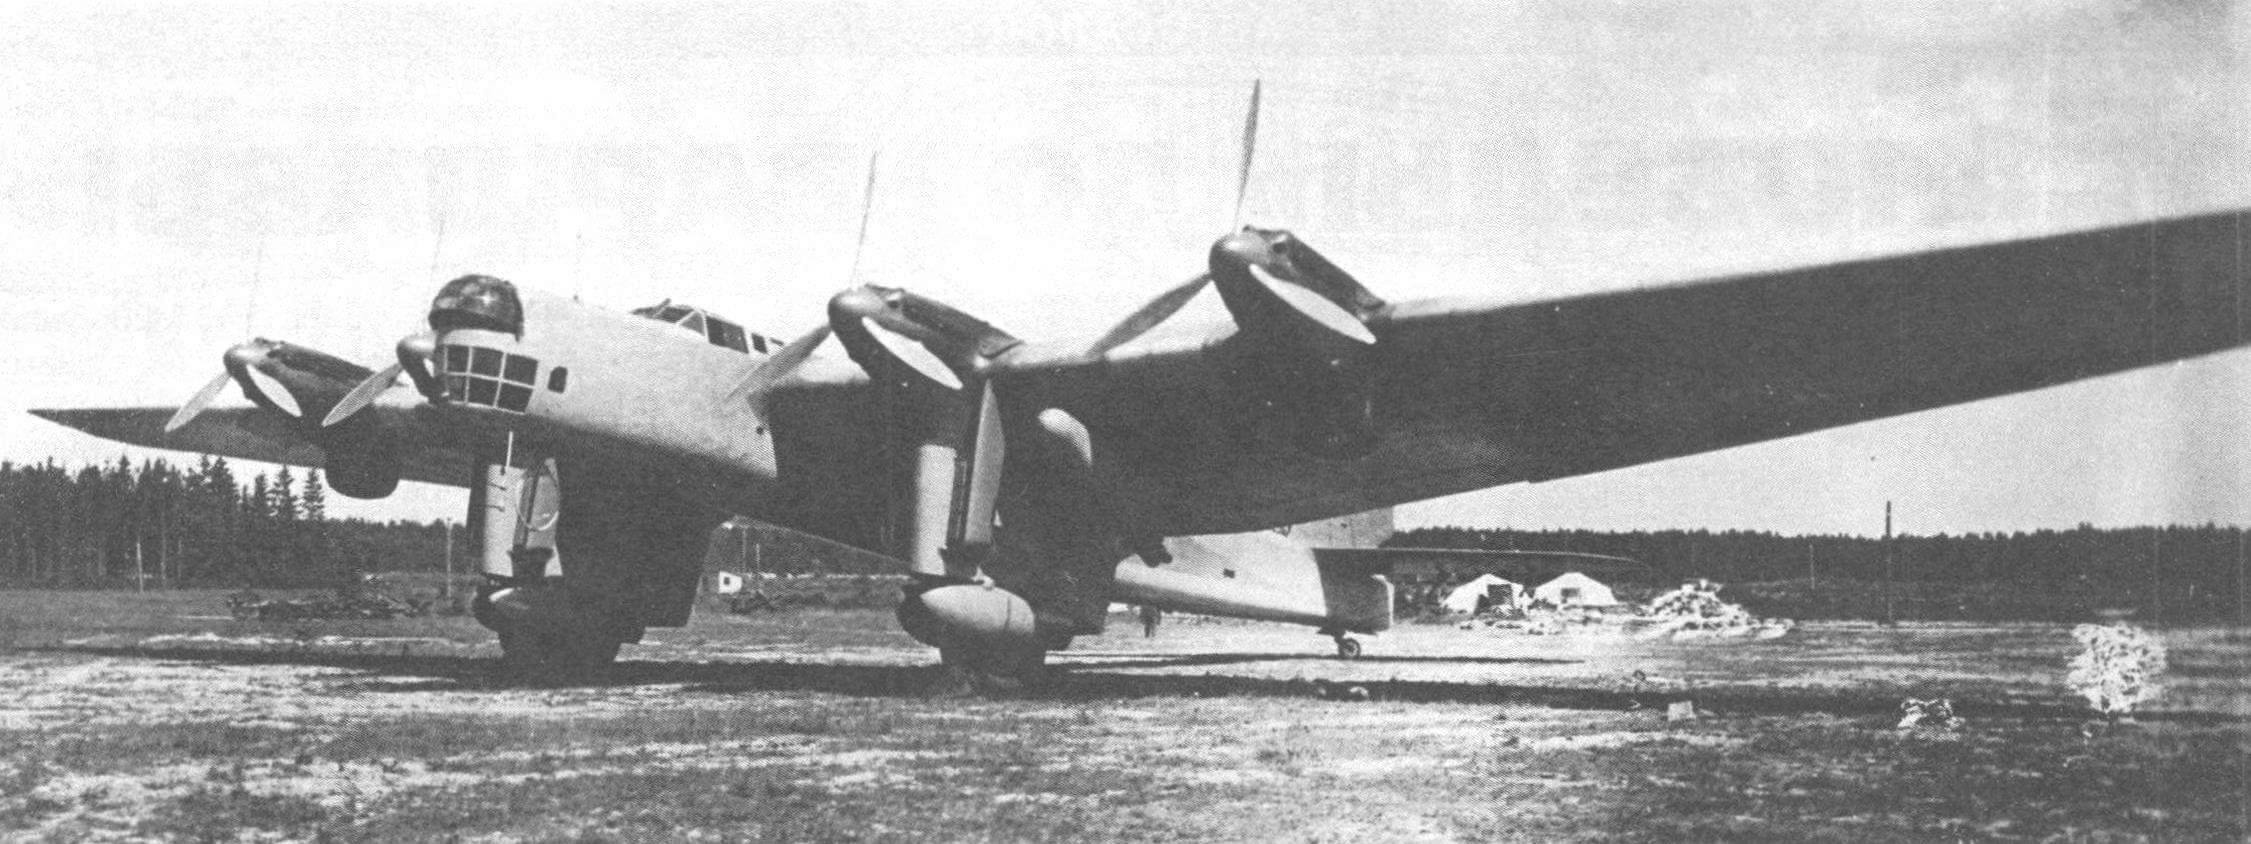 Опытный образец ДБА после установки моторов М-34ФРН. Во время испытания химического вооружения на нем подвесили выливные приборы ВАП-500 (сентябрь 1936 года)